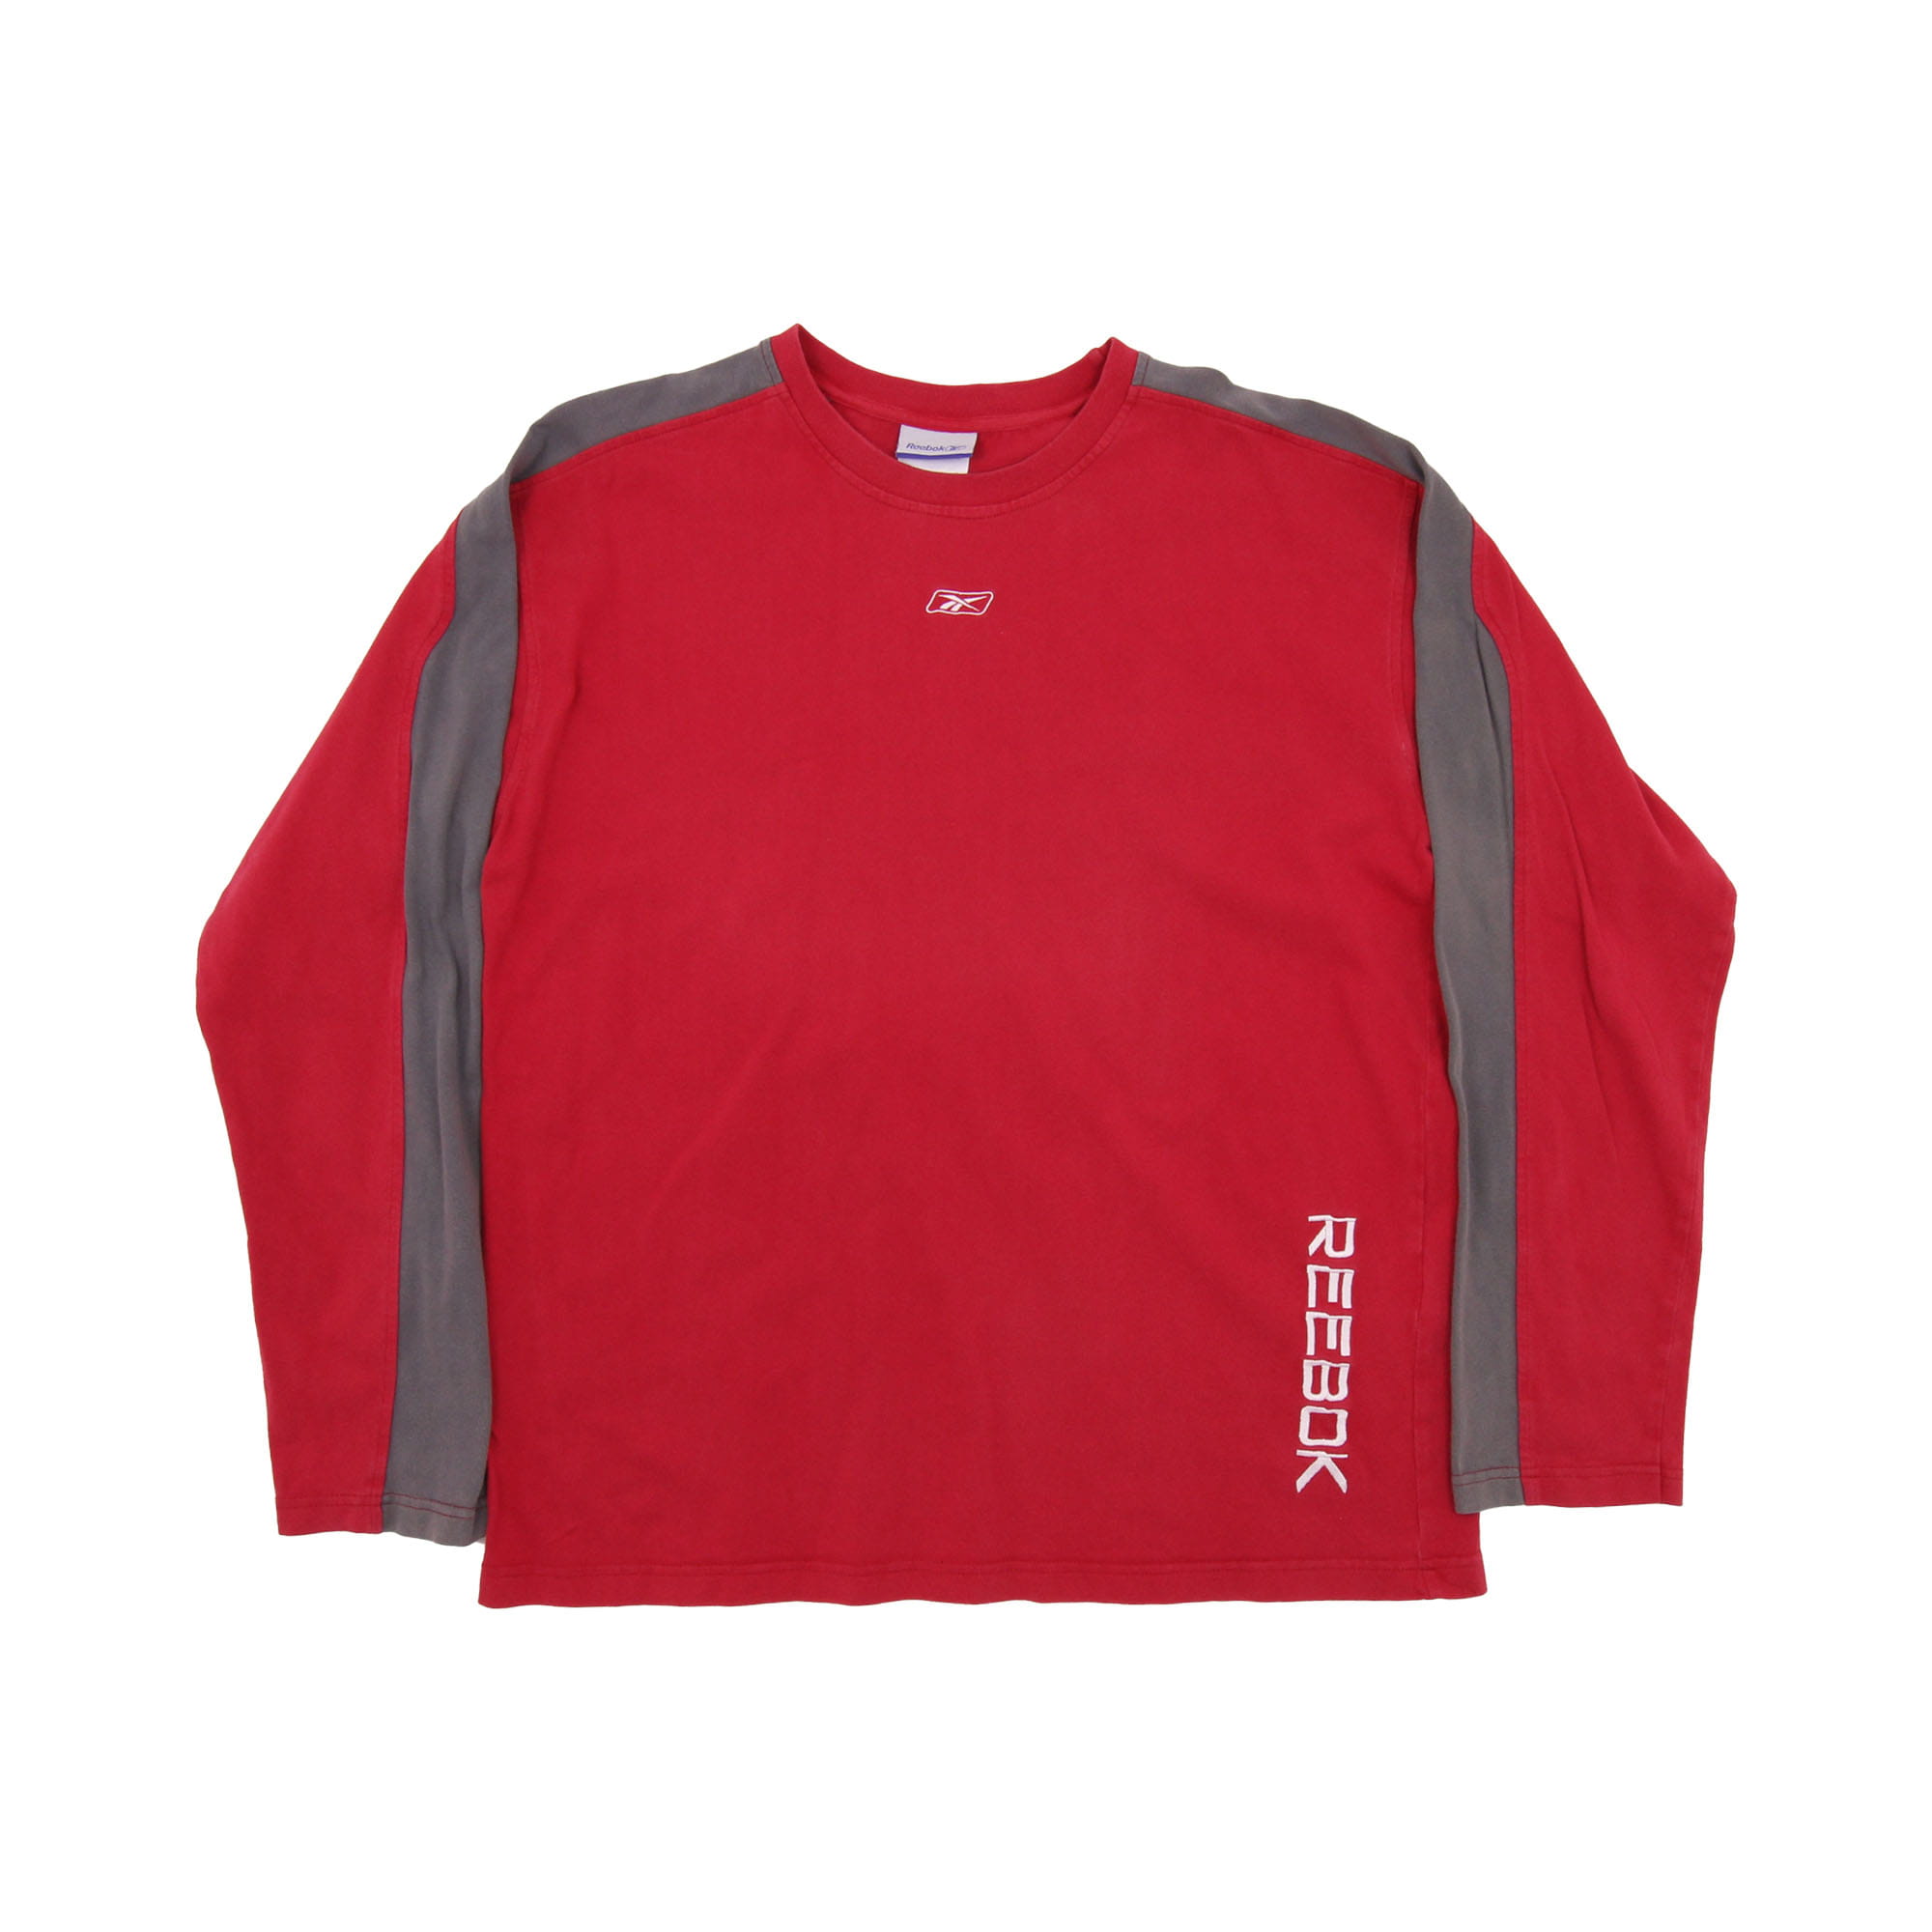 Reebok Sweatshirt Red -  M/L